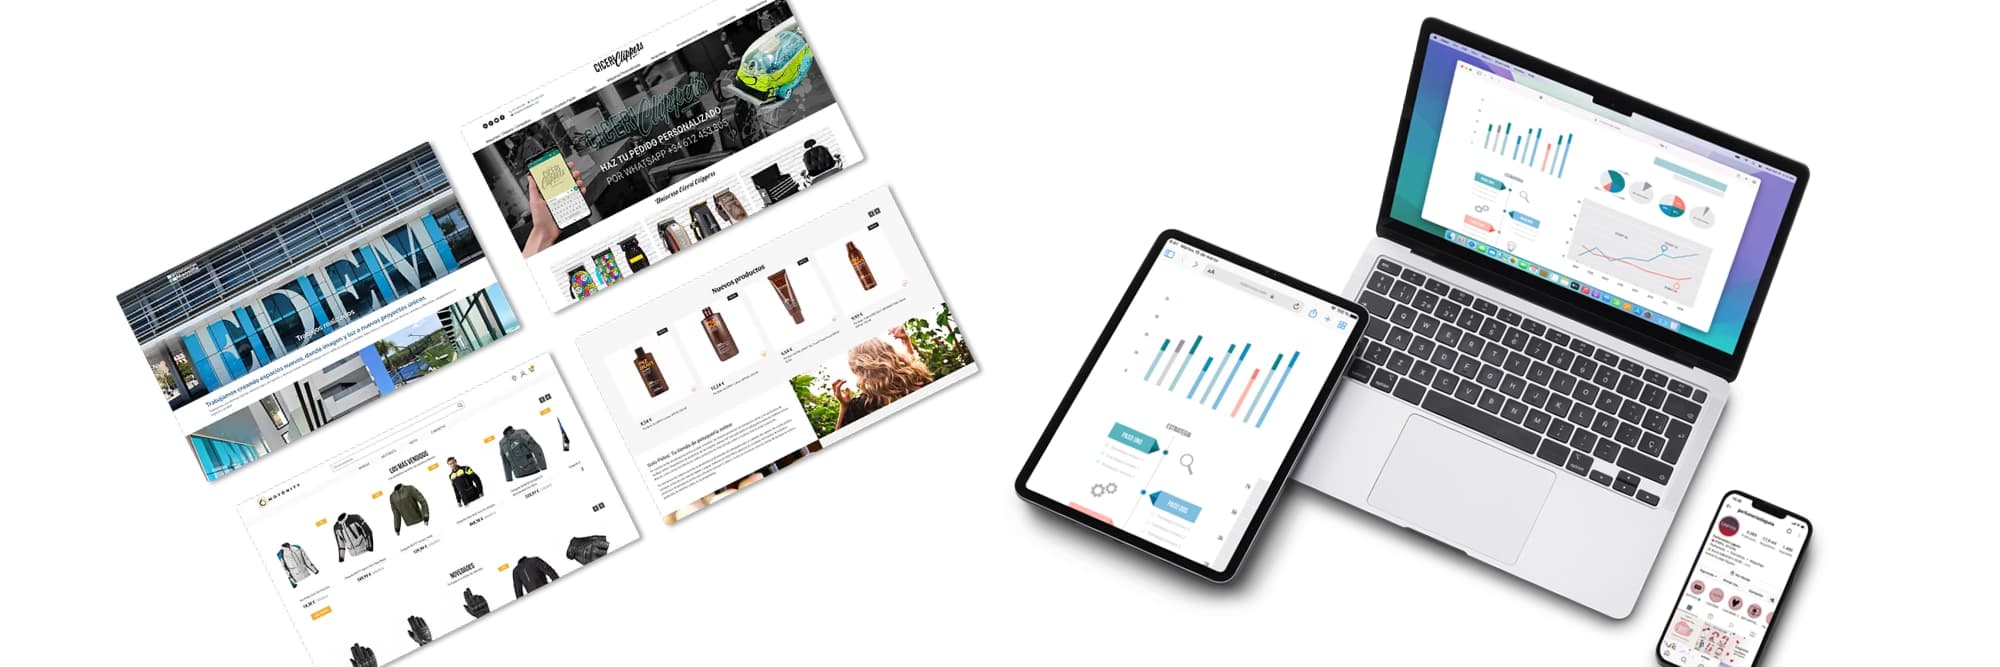 Diseño eCommerce: el Proceso para diseñar tiendas online